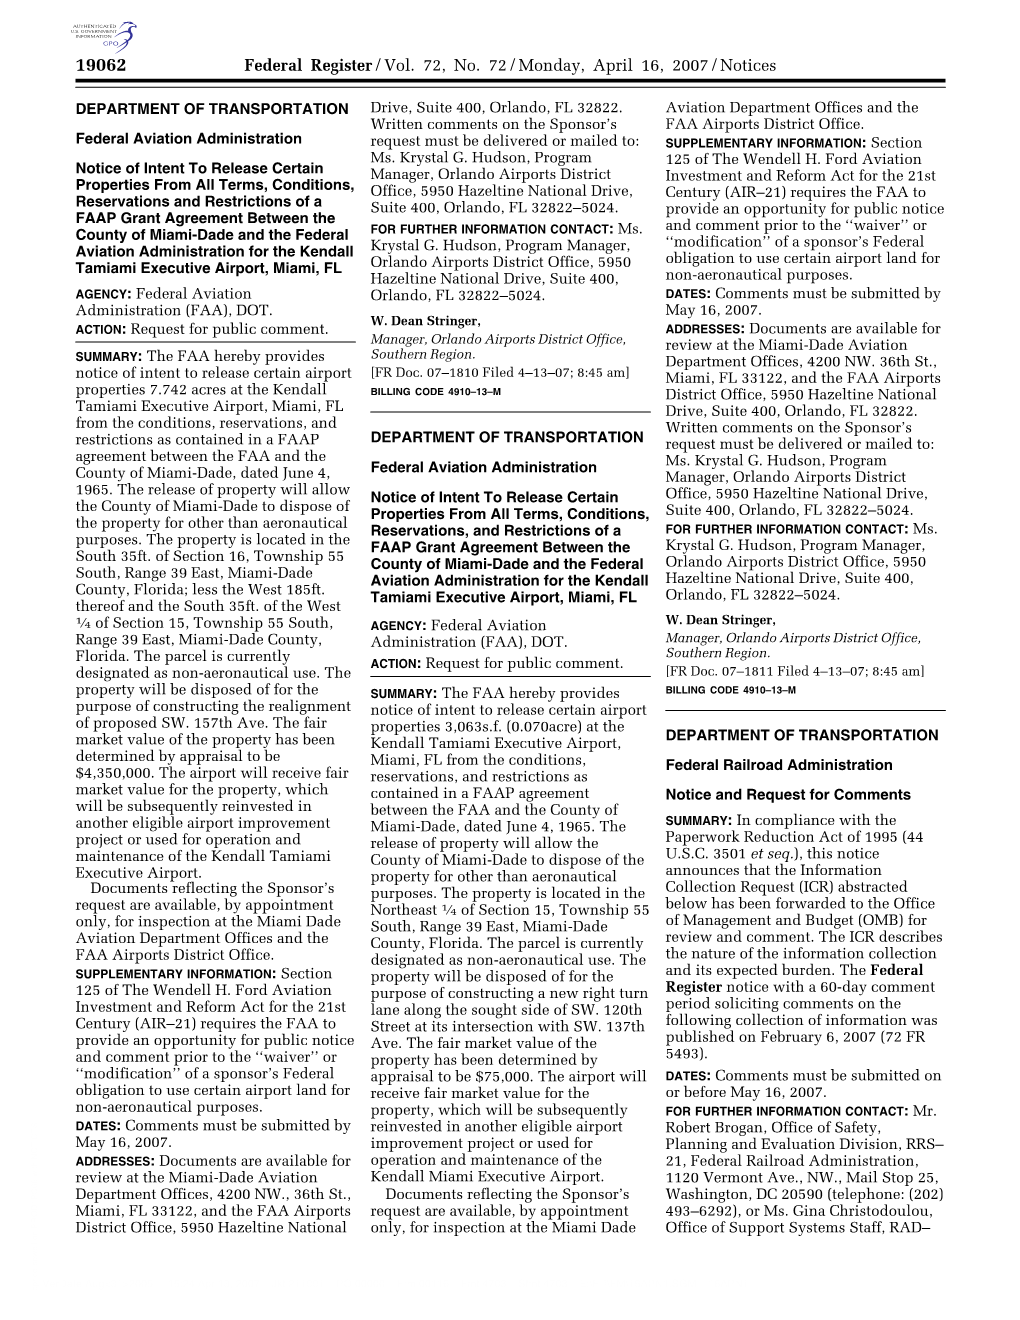 Federal Register/Vol. 72, No. 72/Monday, April 16, 2007/Notices